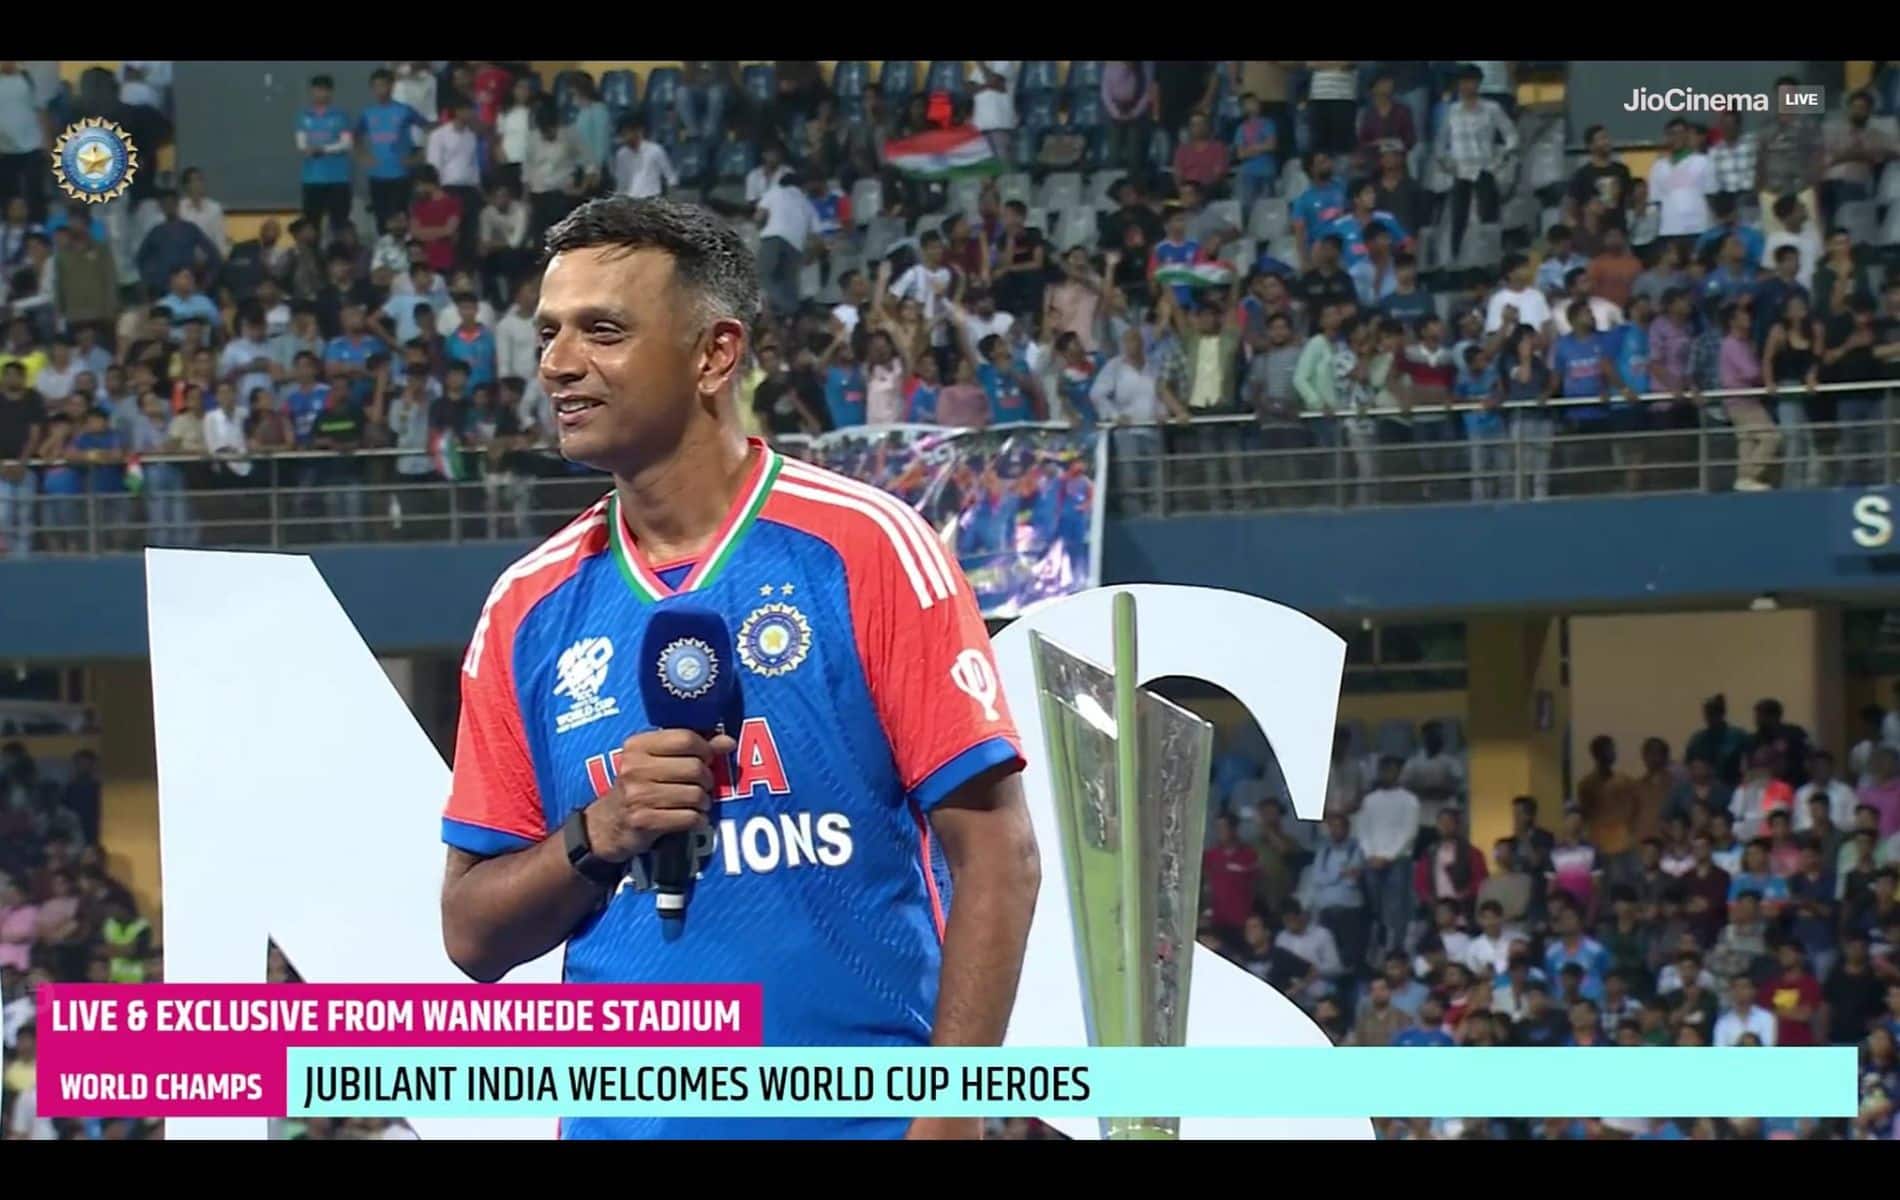 राहुल द्रविड़ ने T20 विश्व कप जीतने के बाद की अपनी भावना के बारे में बताया (X)